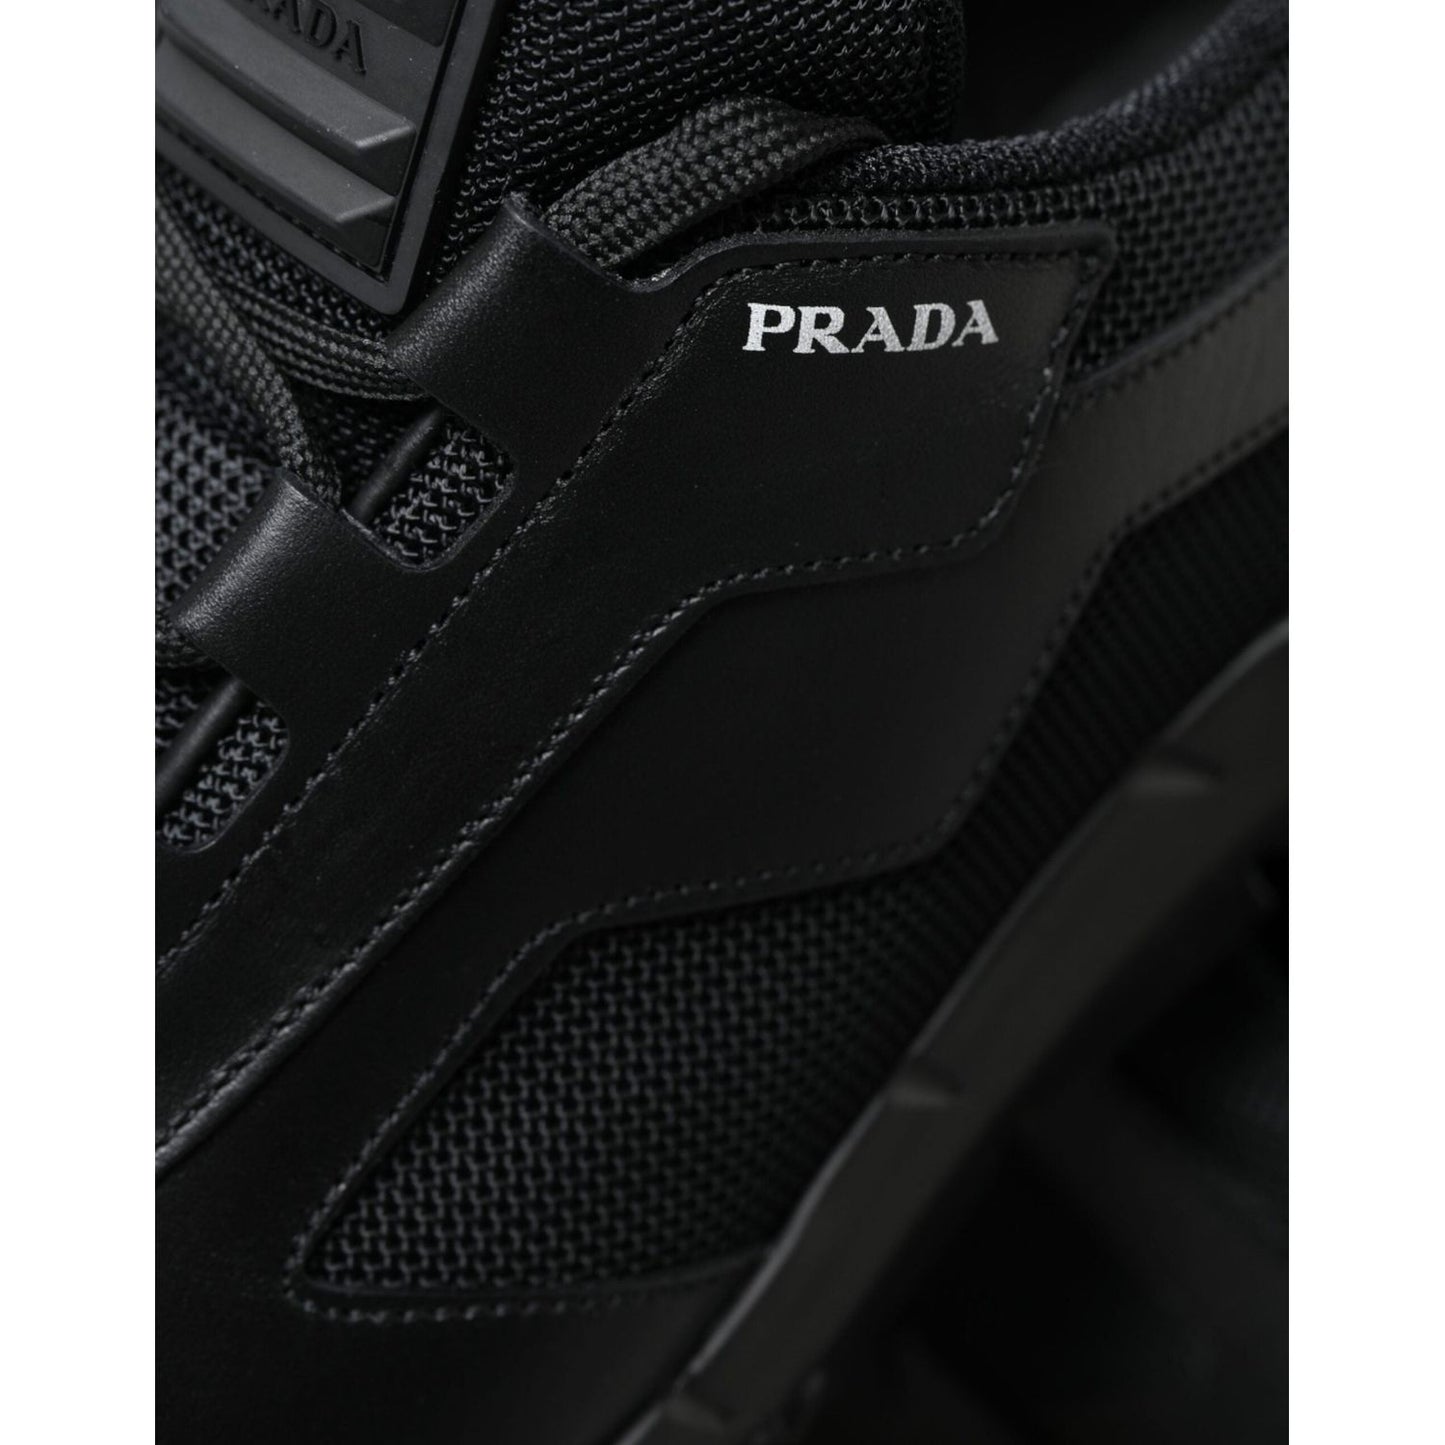 Prada Sleek Low Top Leather Sneakers in Timeless Black black-mesh-panel-low-top-twist-trainers-sneakers-shoes